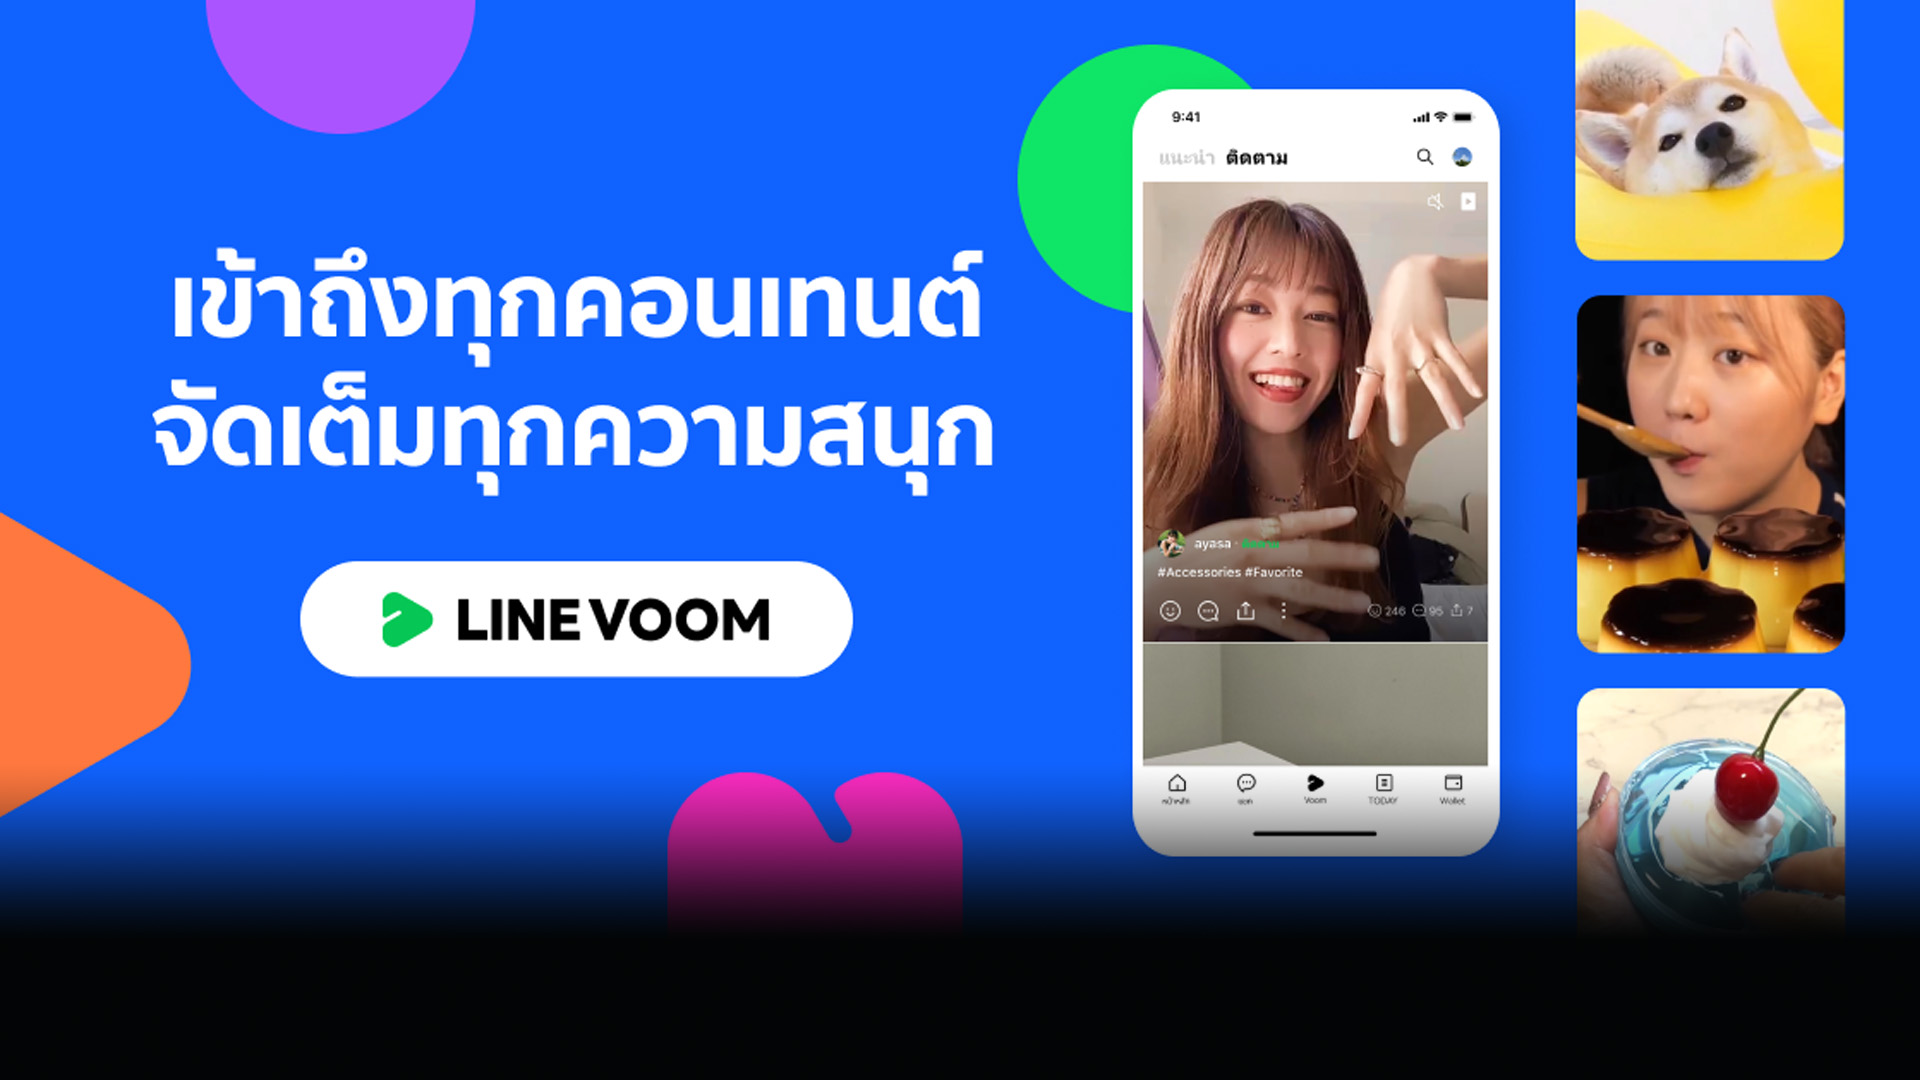 เปิดตัว LINE VOOM ในแอปไลน์ แพลตฟอร์มวิดีโอสั้น หวังชน TikTok